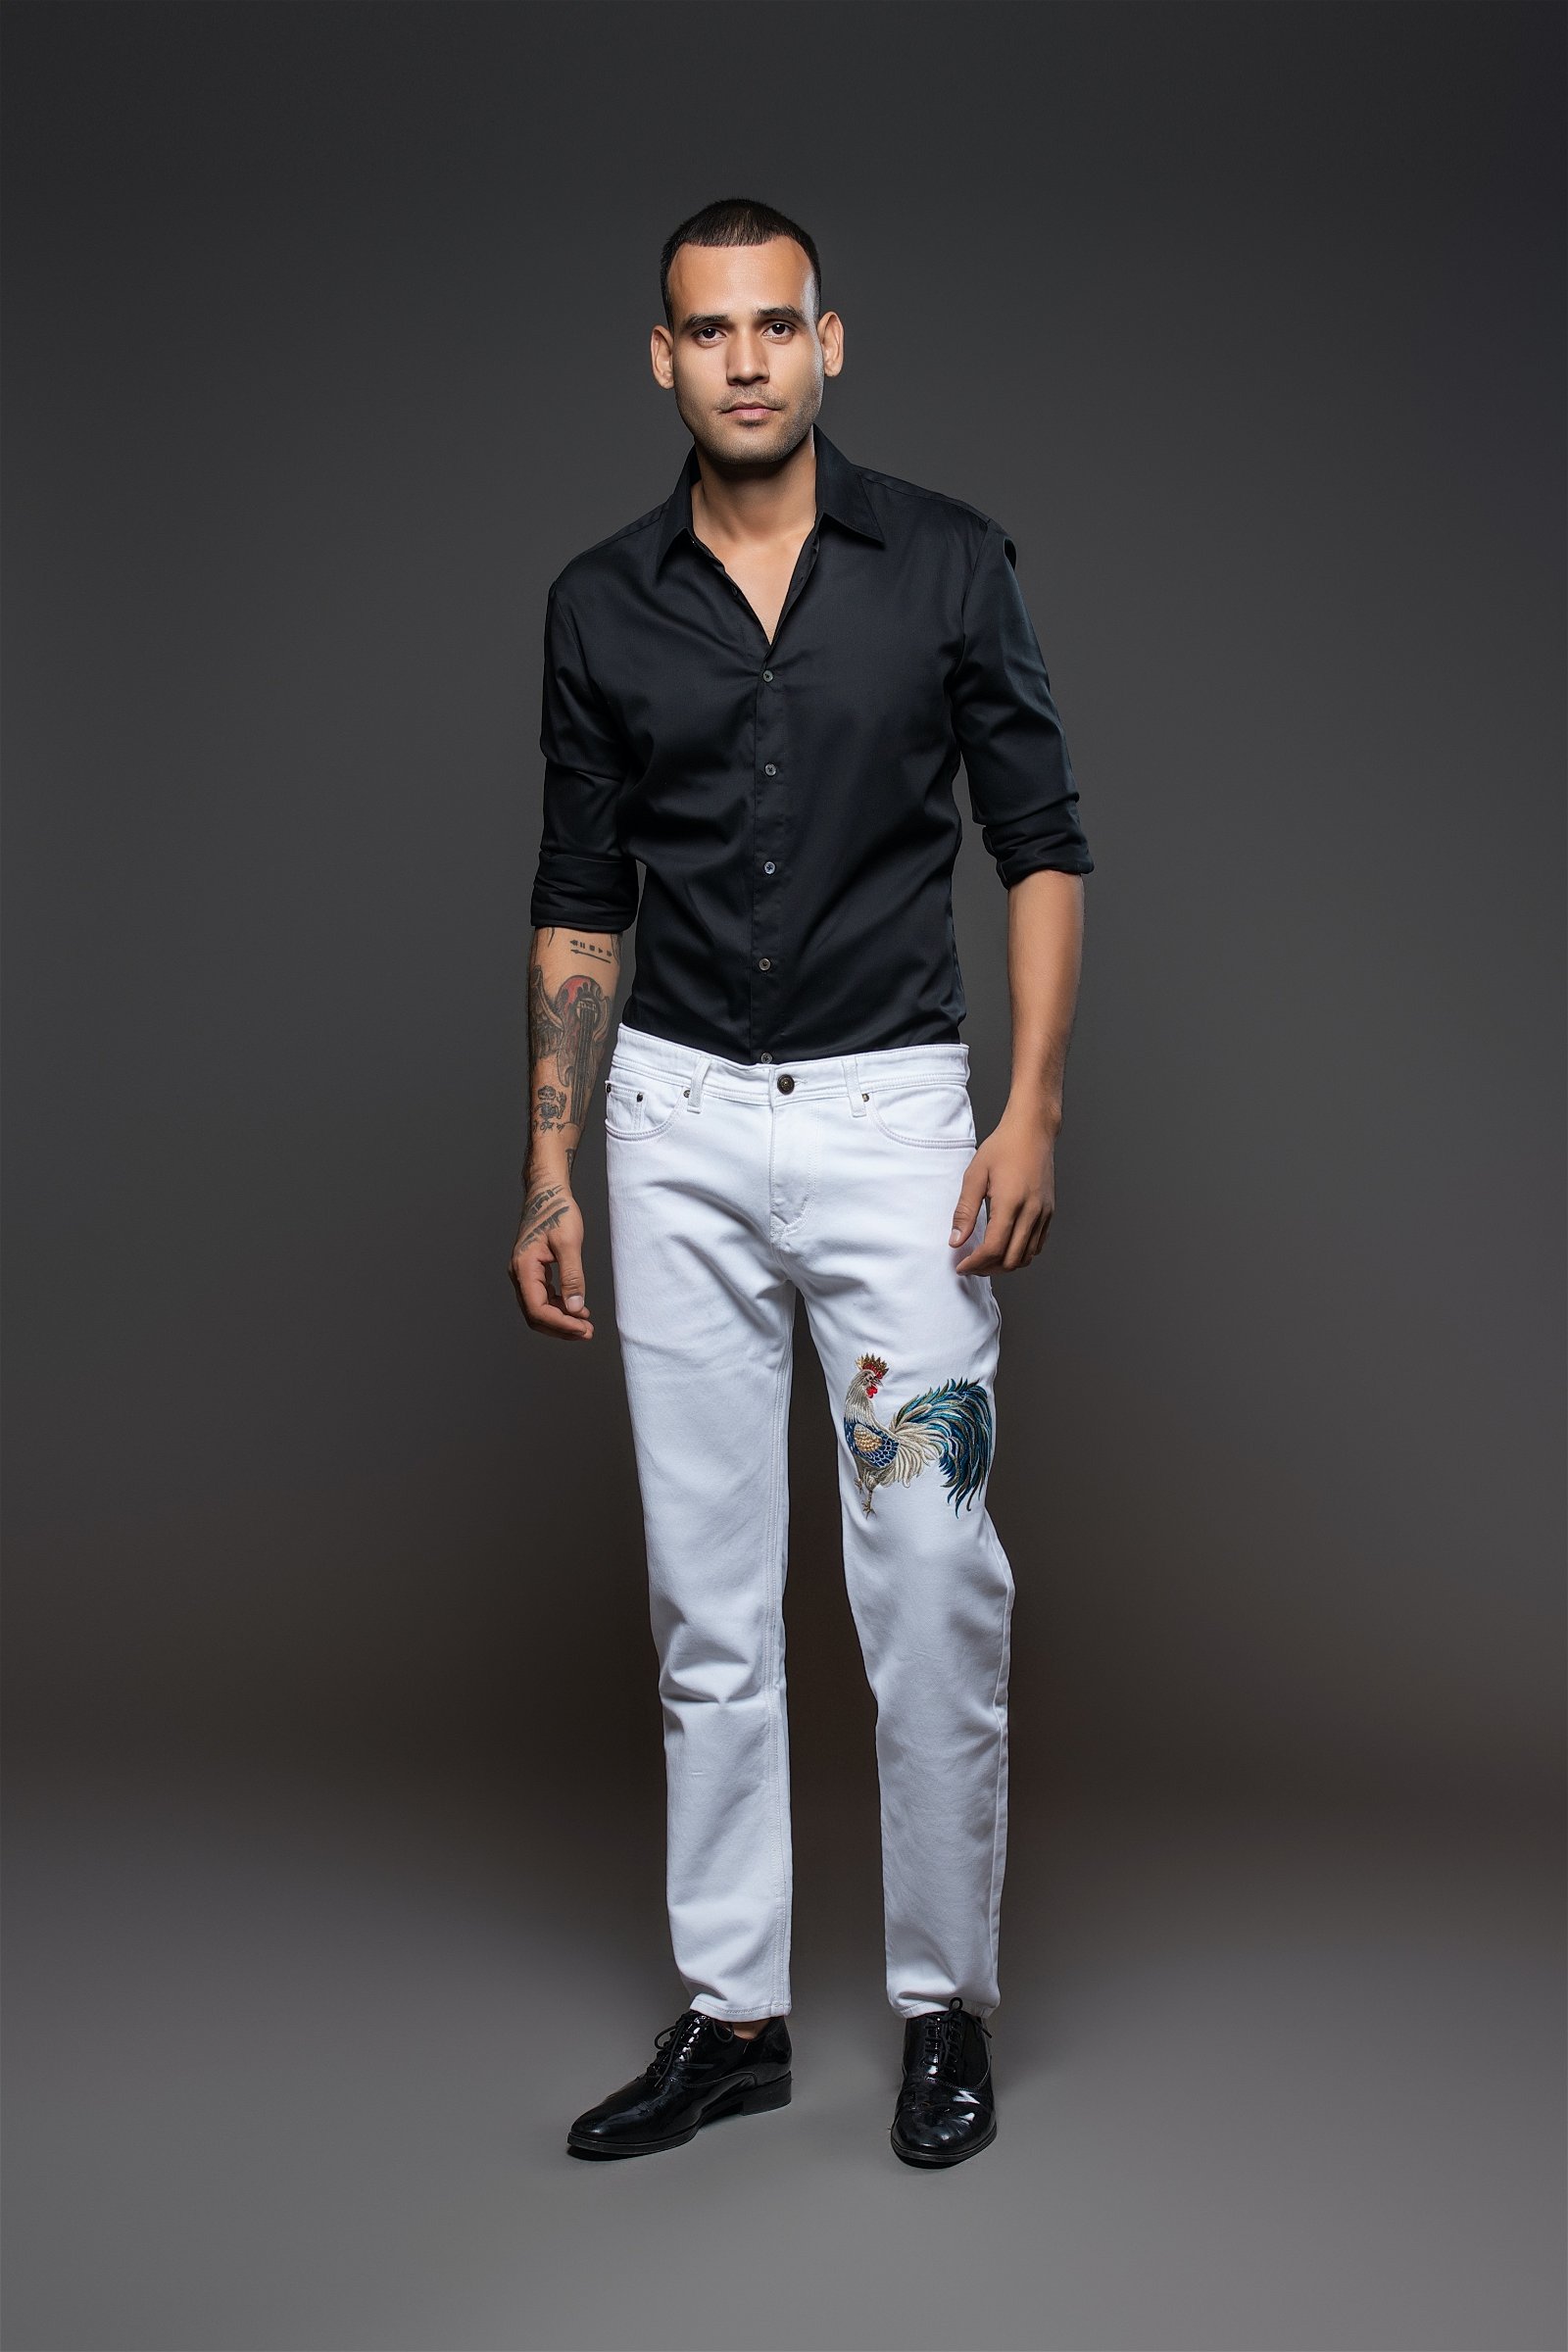 The Denim Shop - Men's Jeans & Selvedge Denim | Taylor Stitch